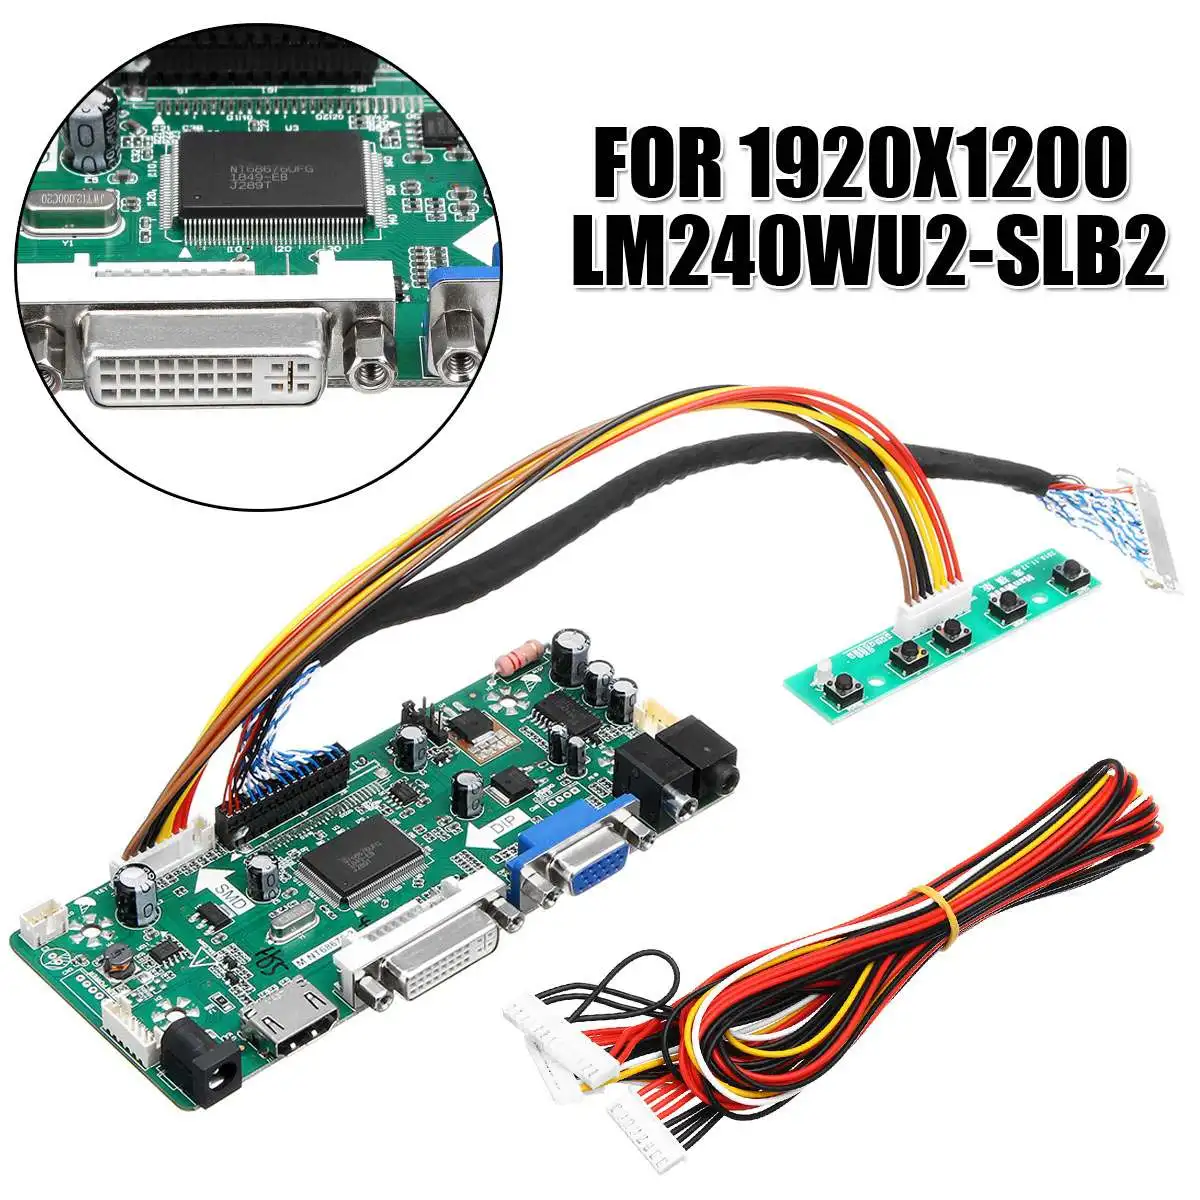 LEORY ЖК-дисплей плате контроллера VGA, HDMI, DVI аудио PC драйвер для самостоятельной сборки платы конвертер для 24 inch Дисплей 1920x1200 LM240WU2-SLB2